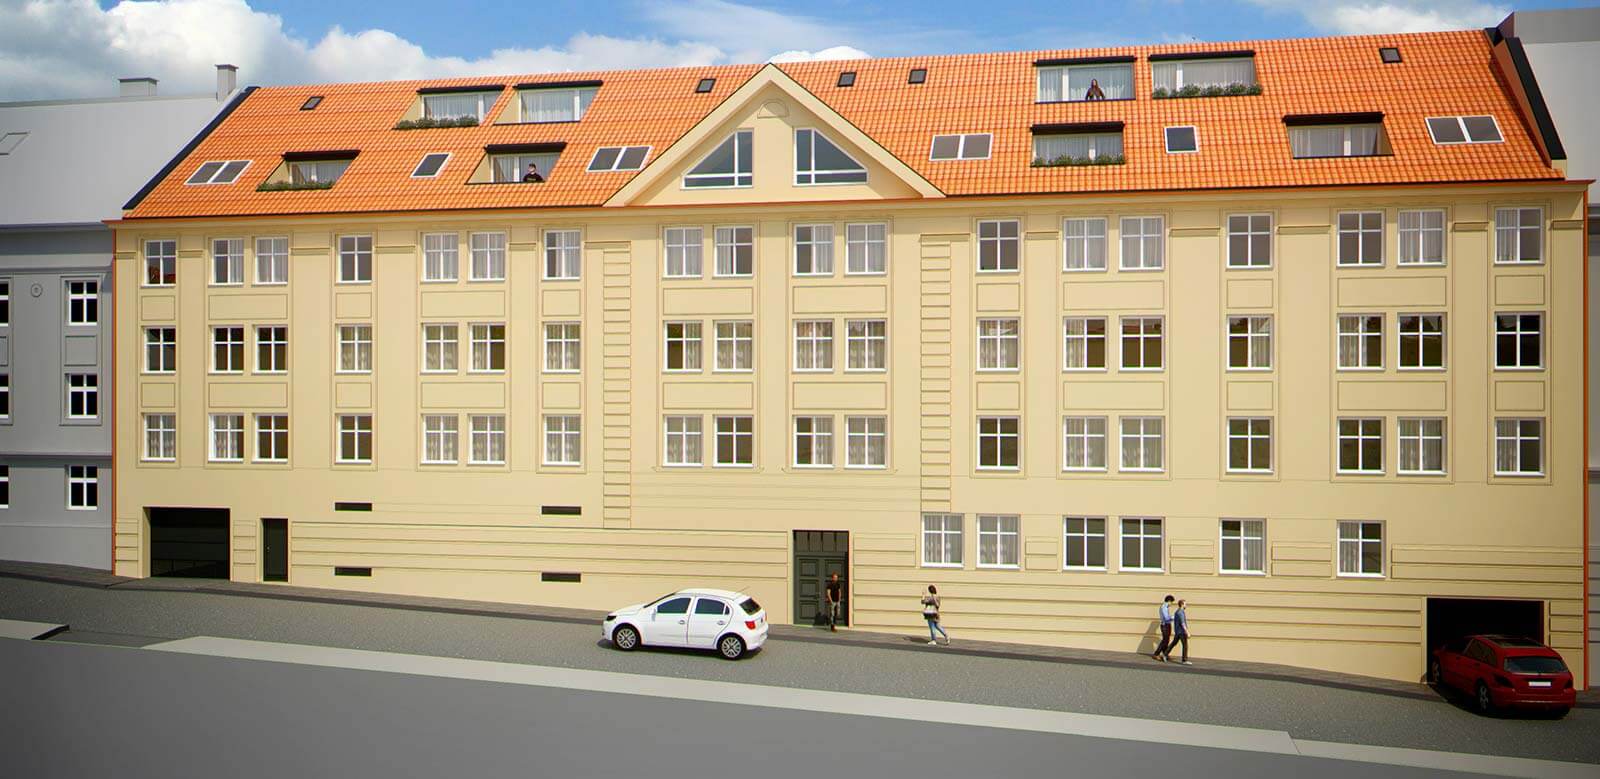 Predané: Novostavba Mezonet 4 izbový, širšie centrum v Bratislave, Beskydská ulica, 141m2, balkón a logia spolu 30,84m2, štandard.-10